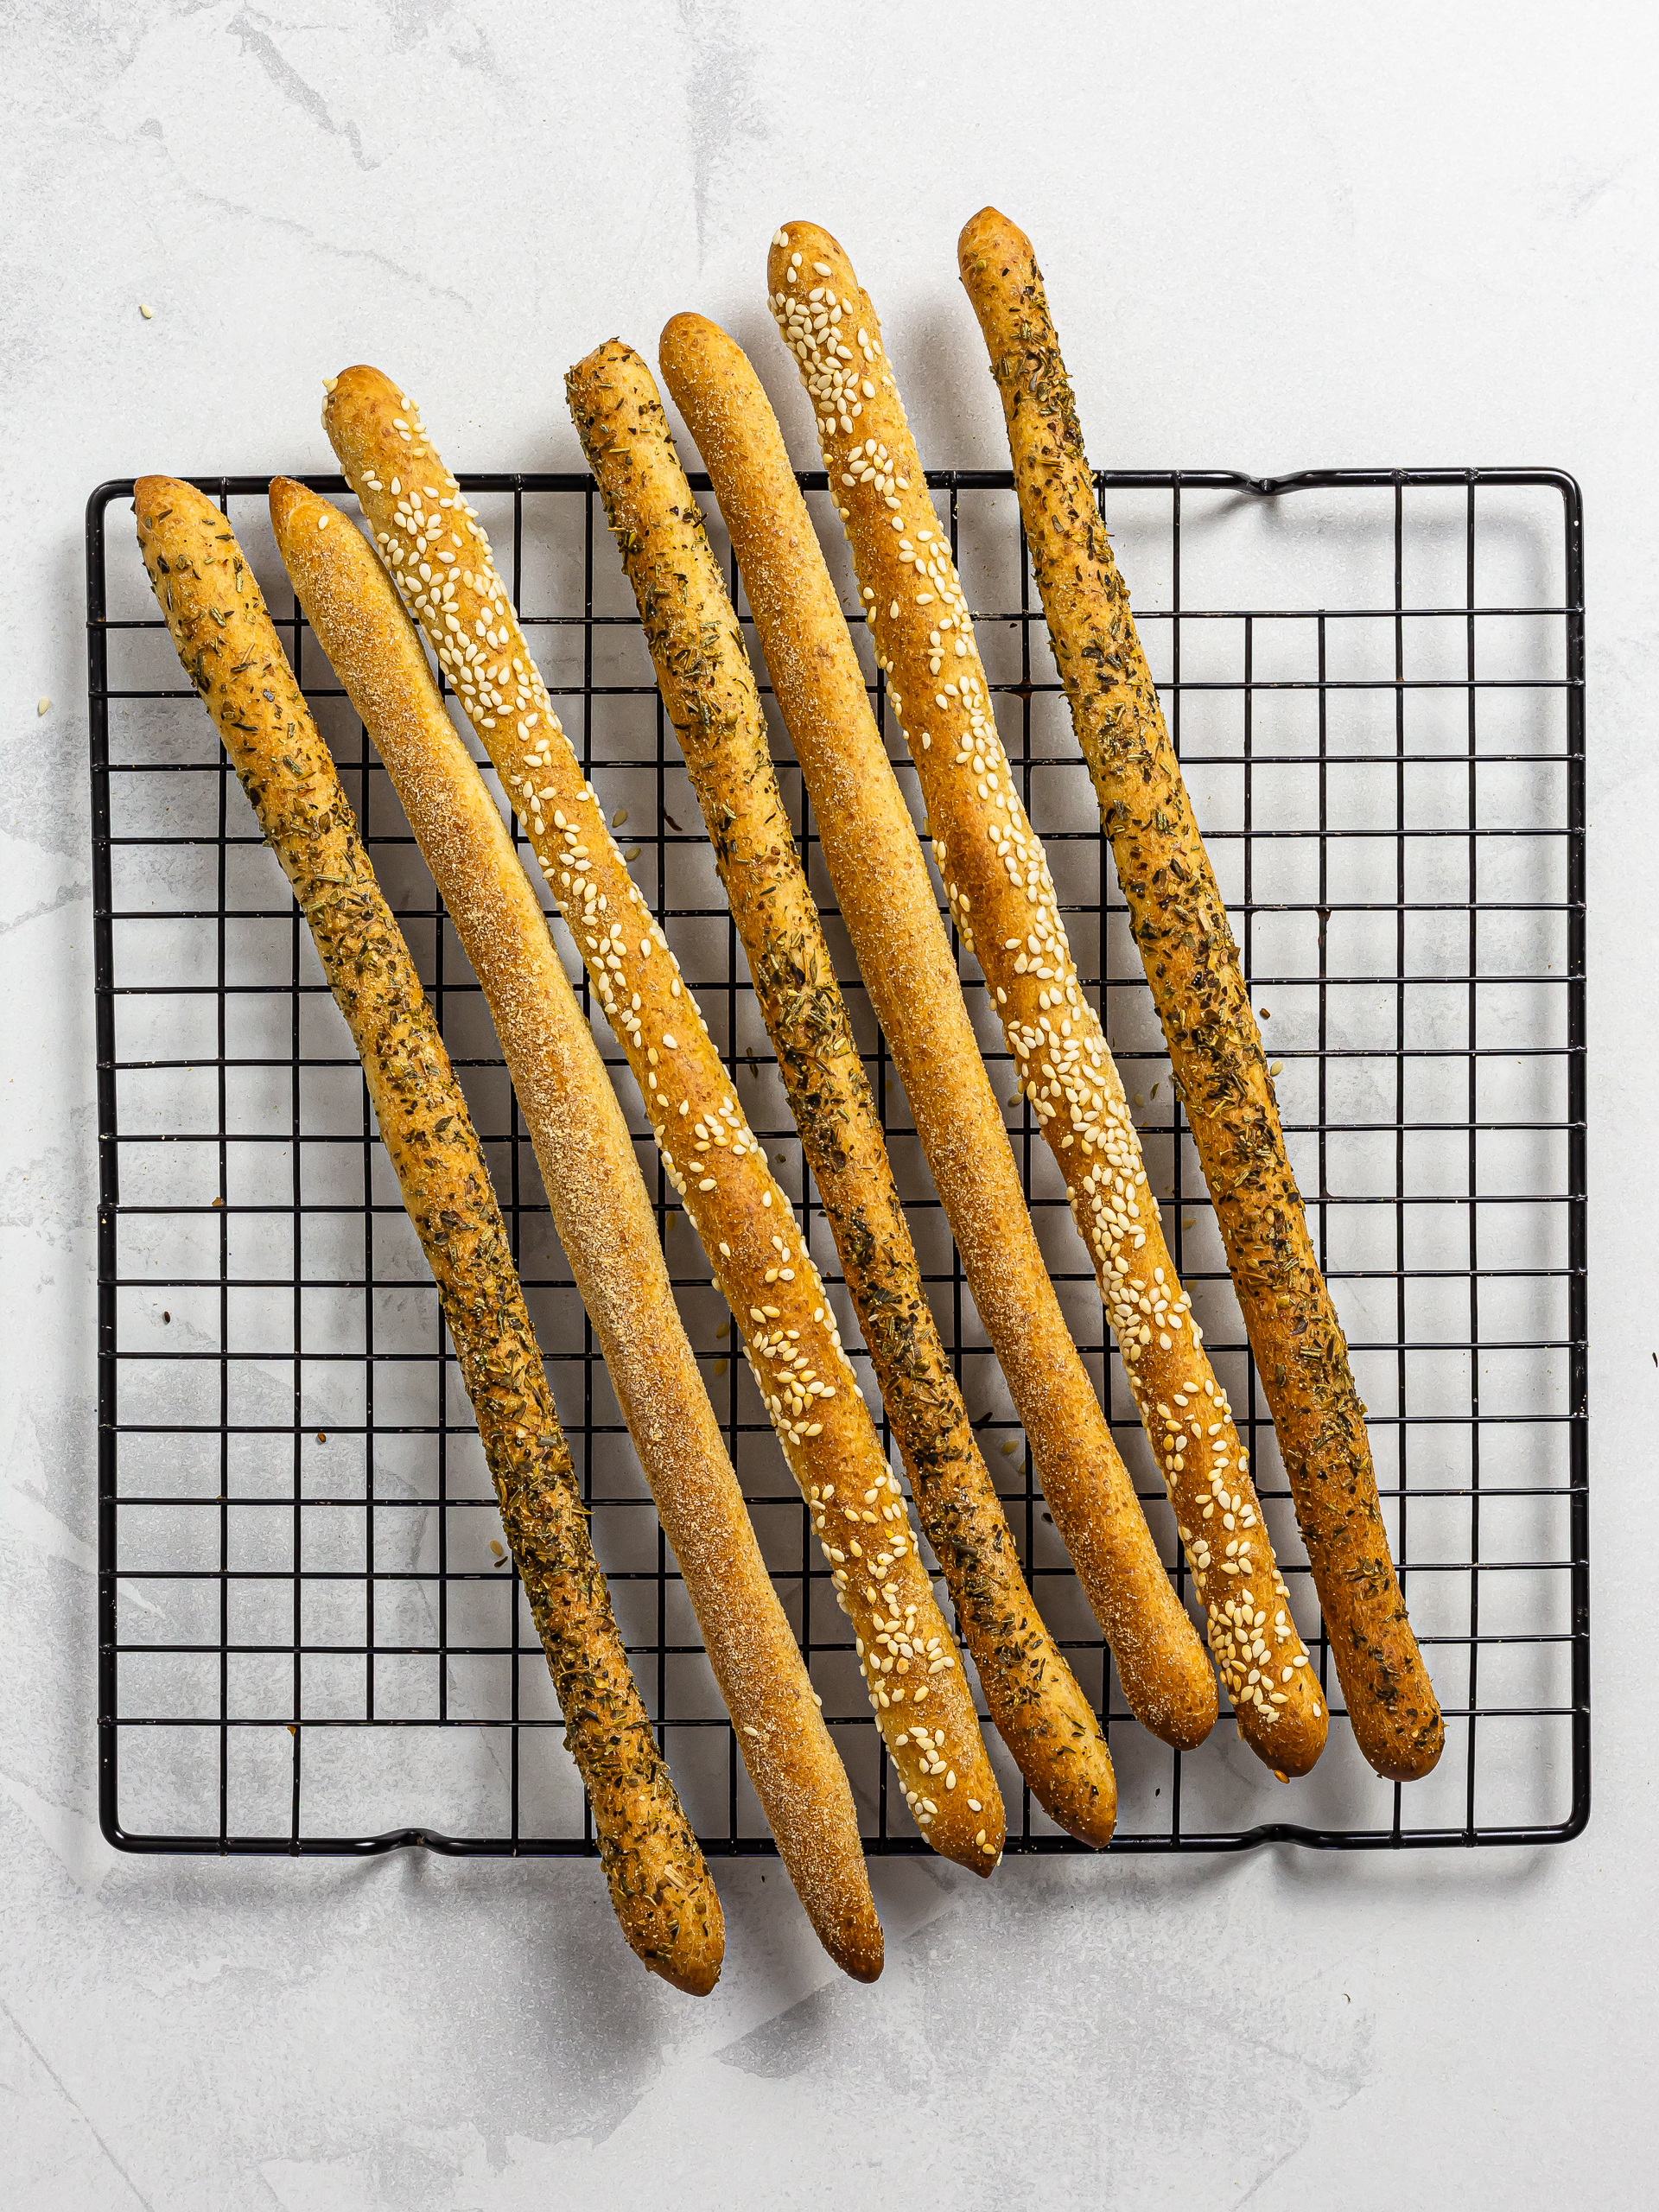 baked sourdough breadsticks